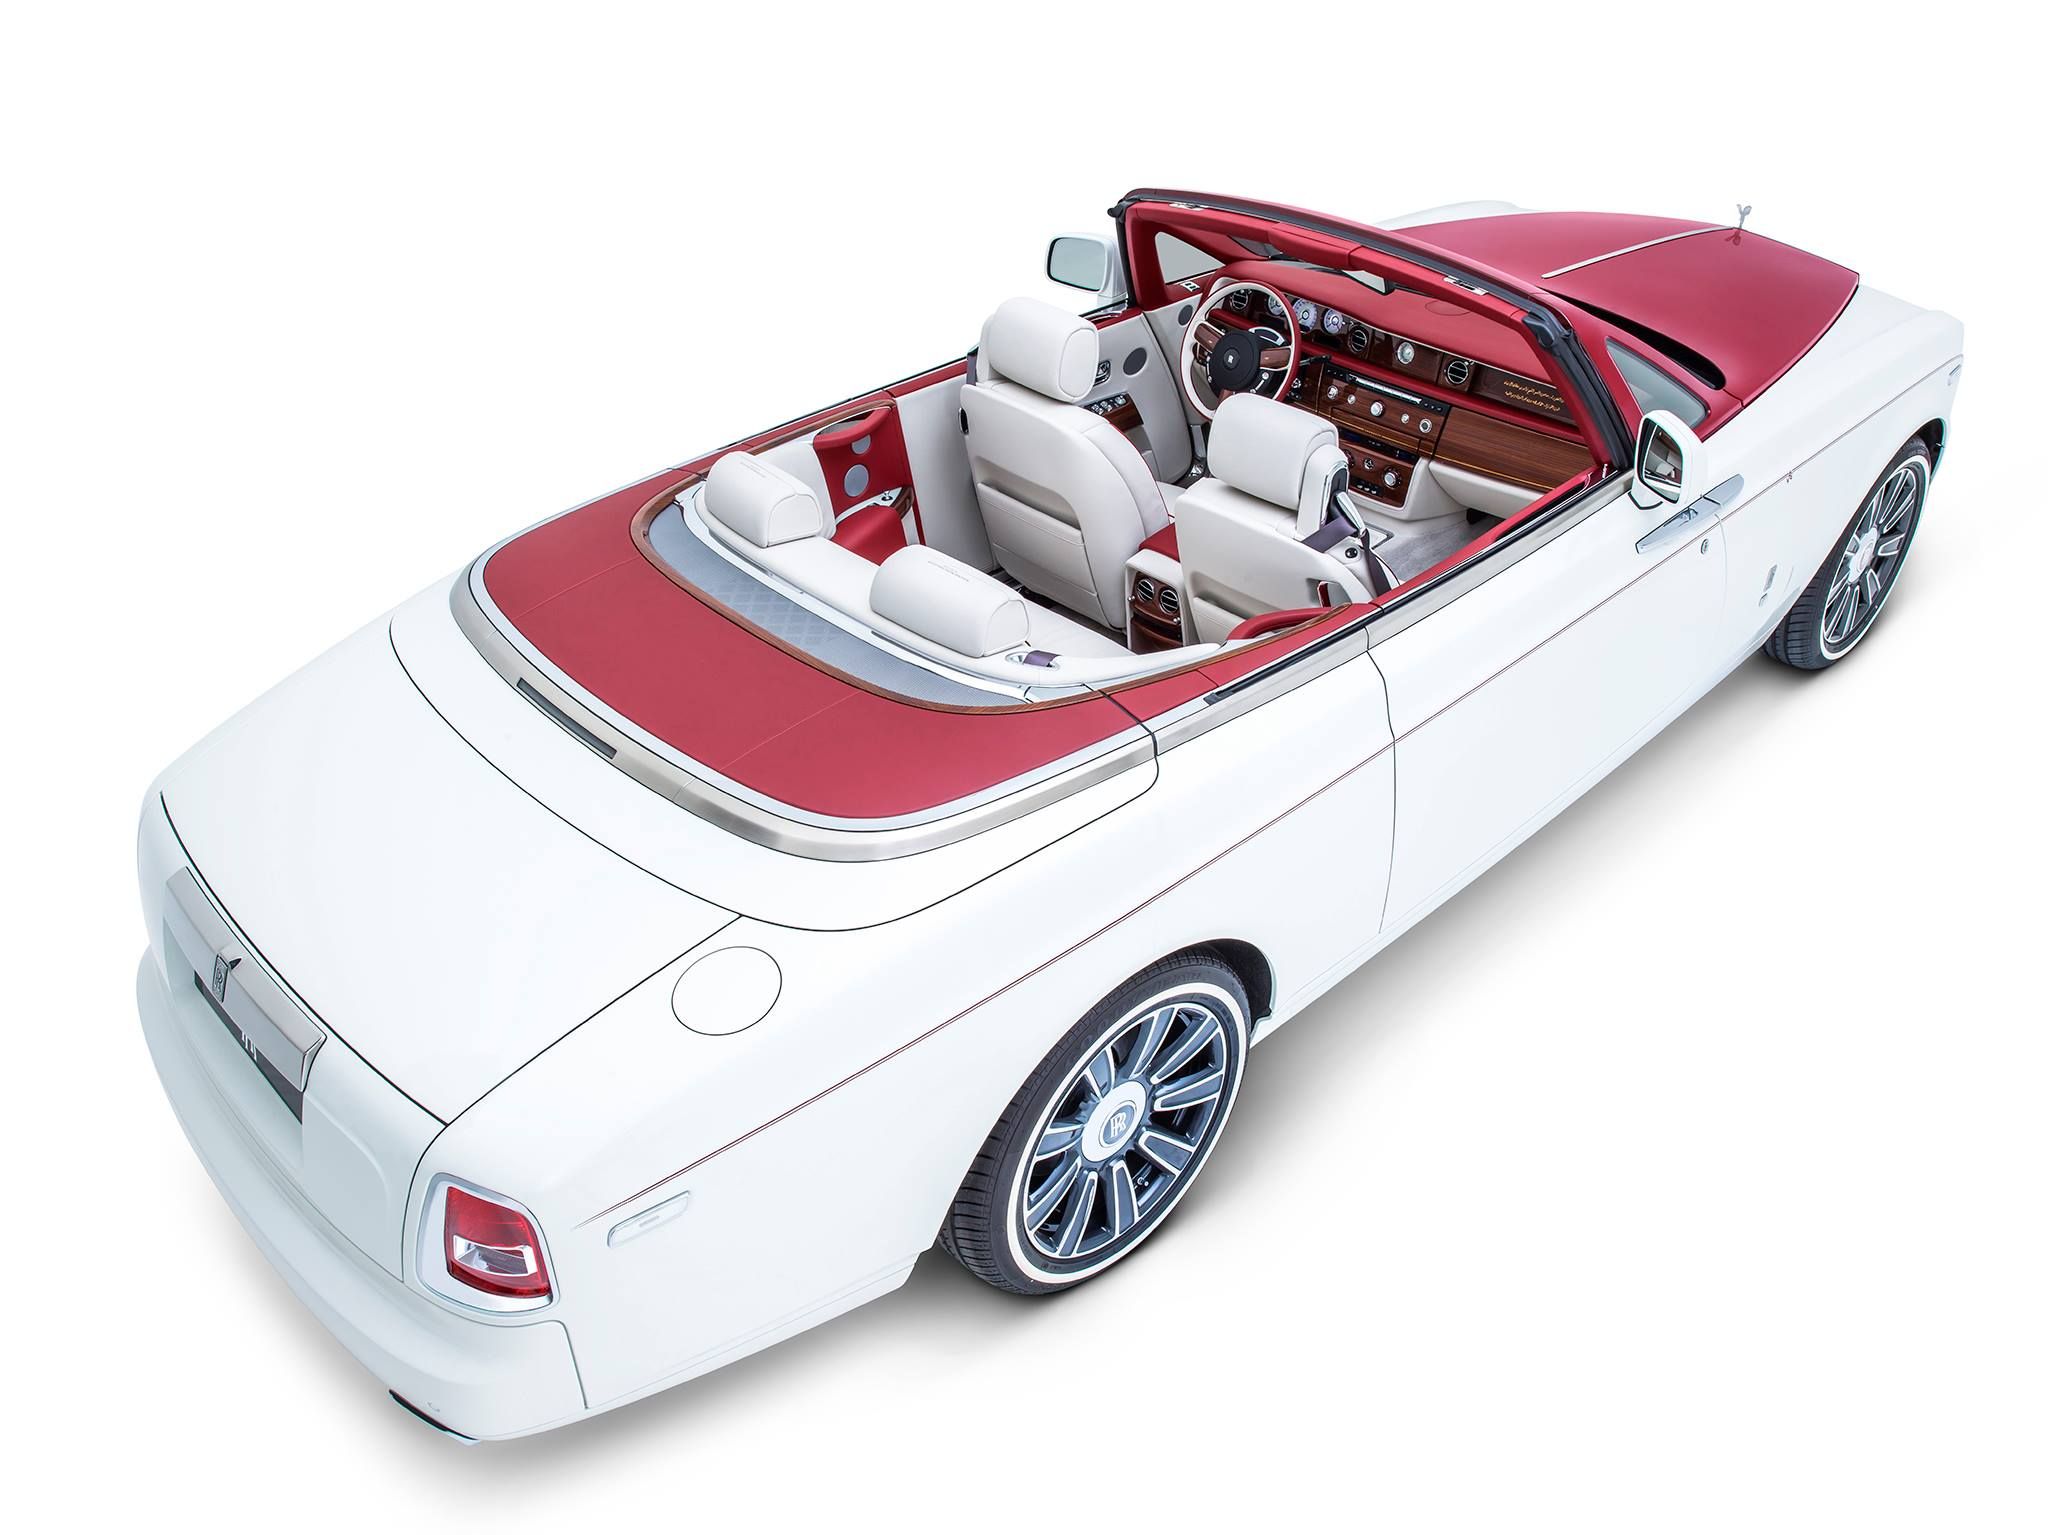 2017 Rolls-Royce Phantom Drophead Coupe Inspired By Desert Rose